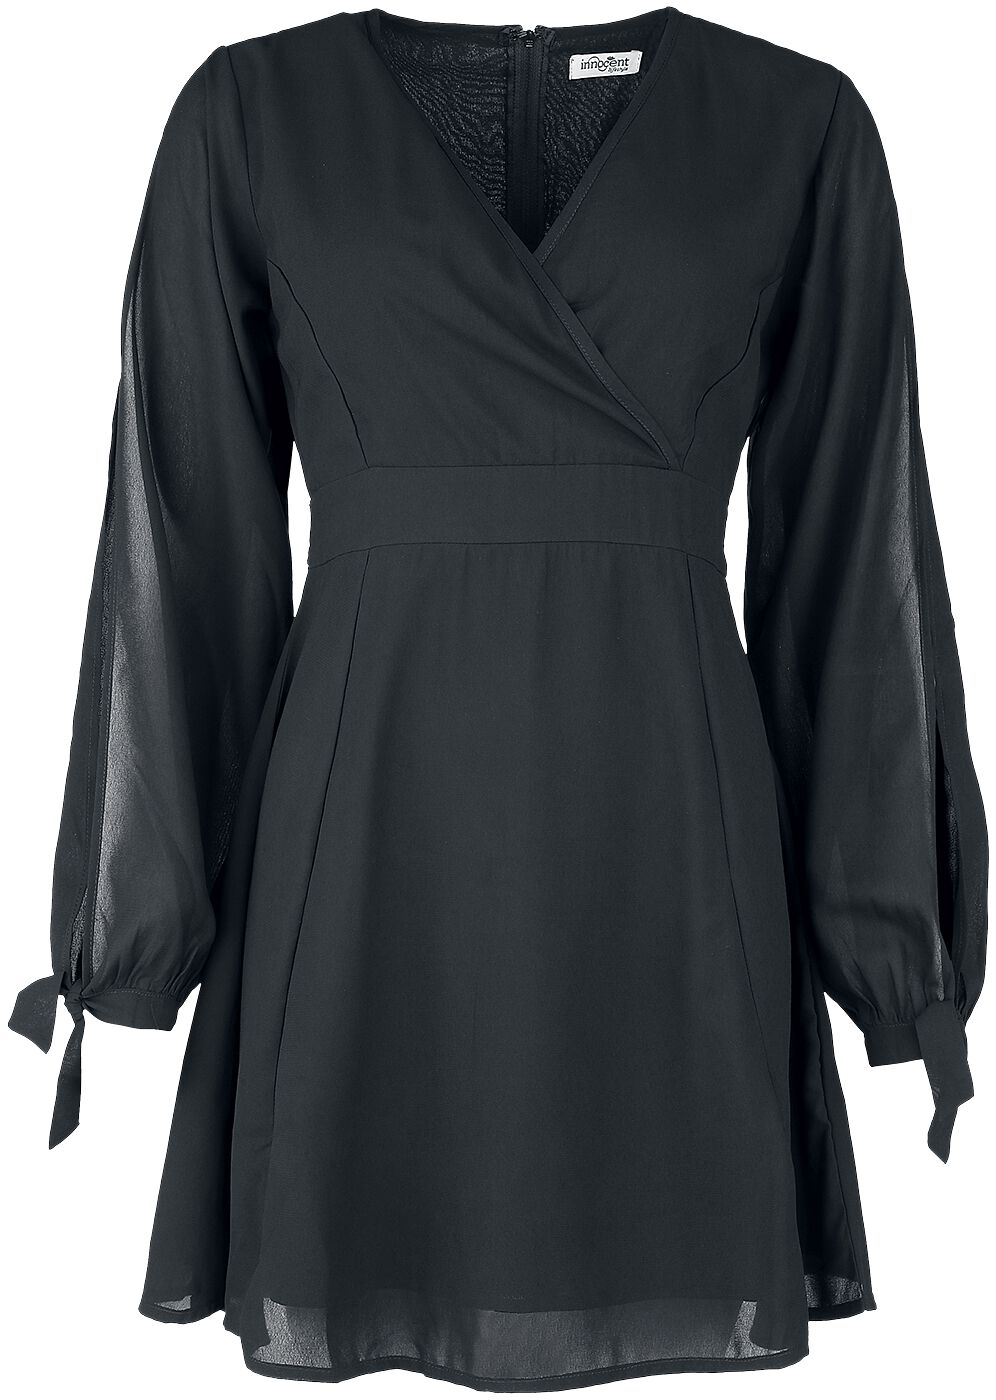 Innocent Opal Dress Kurzes Kleid schwarz in M von innocent